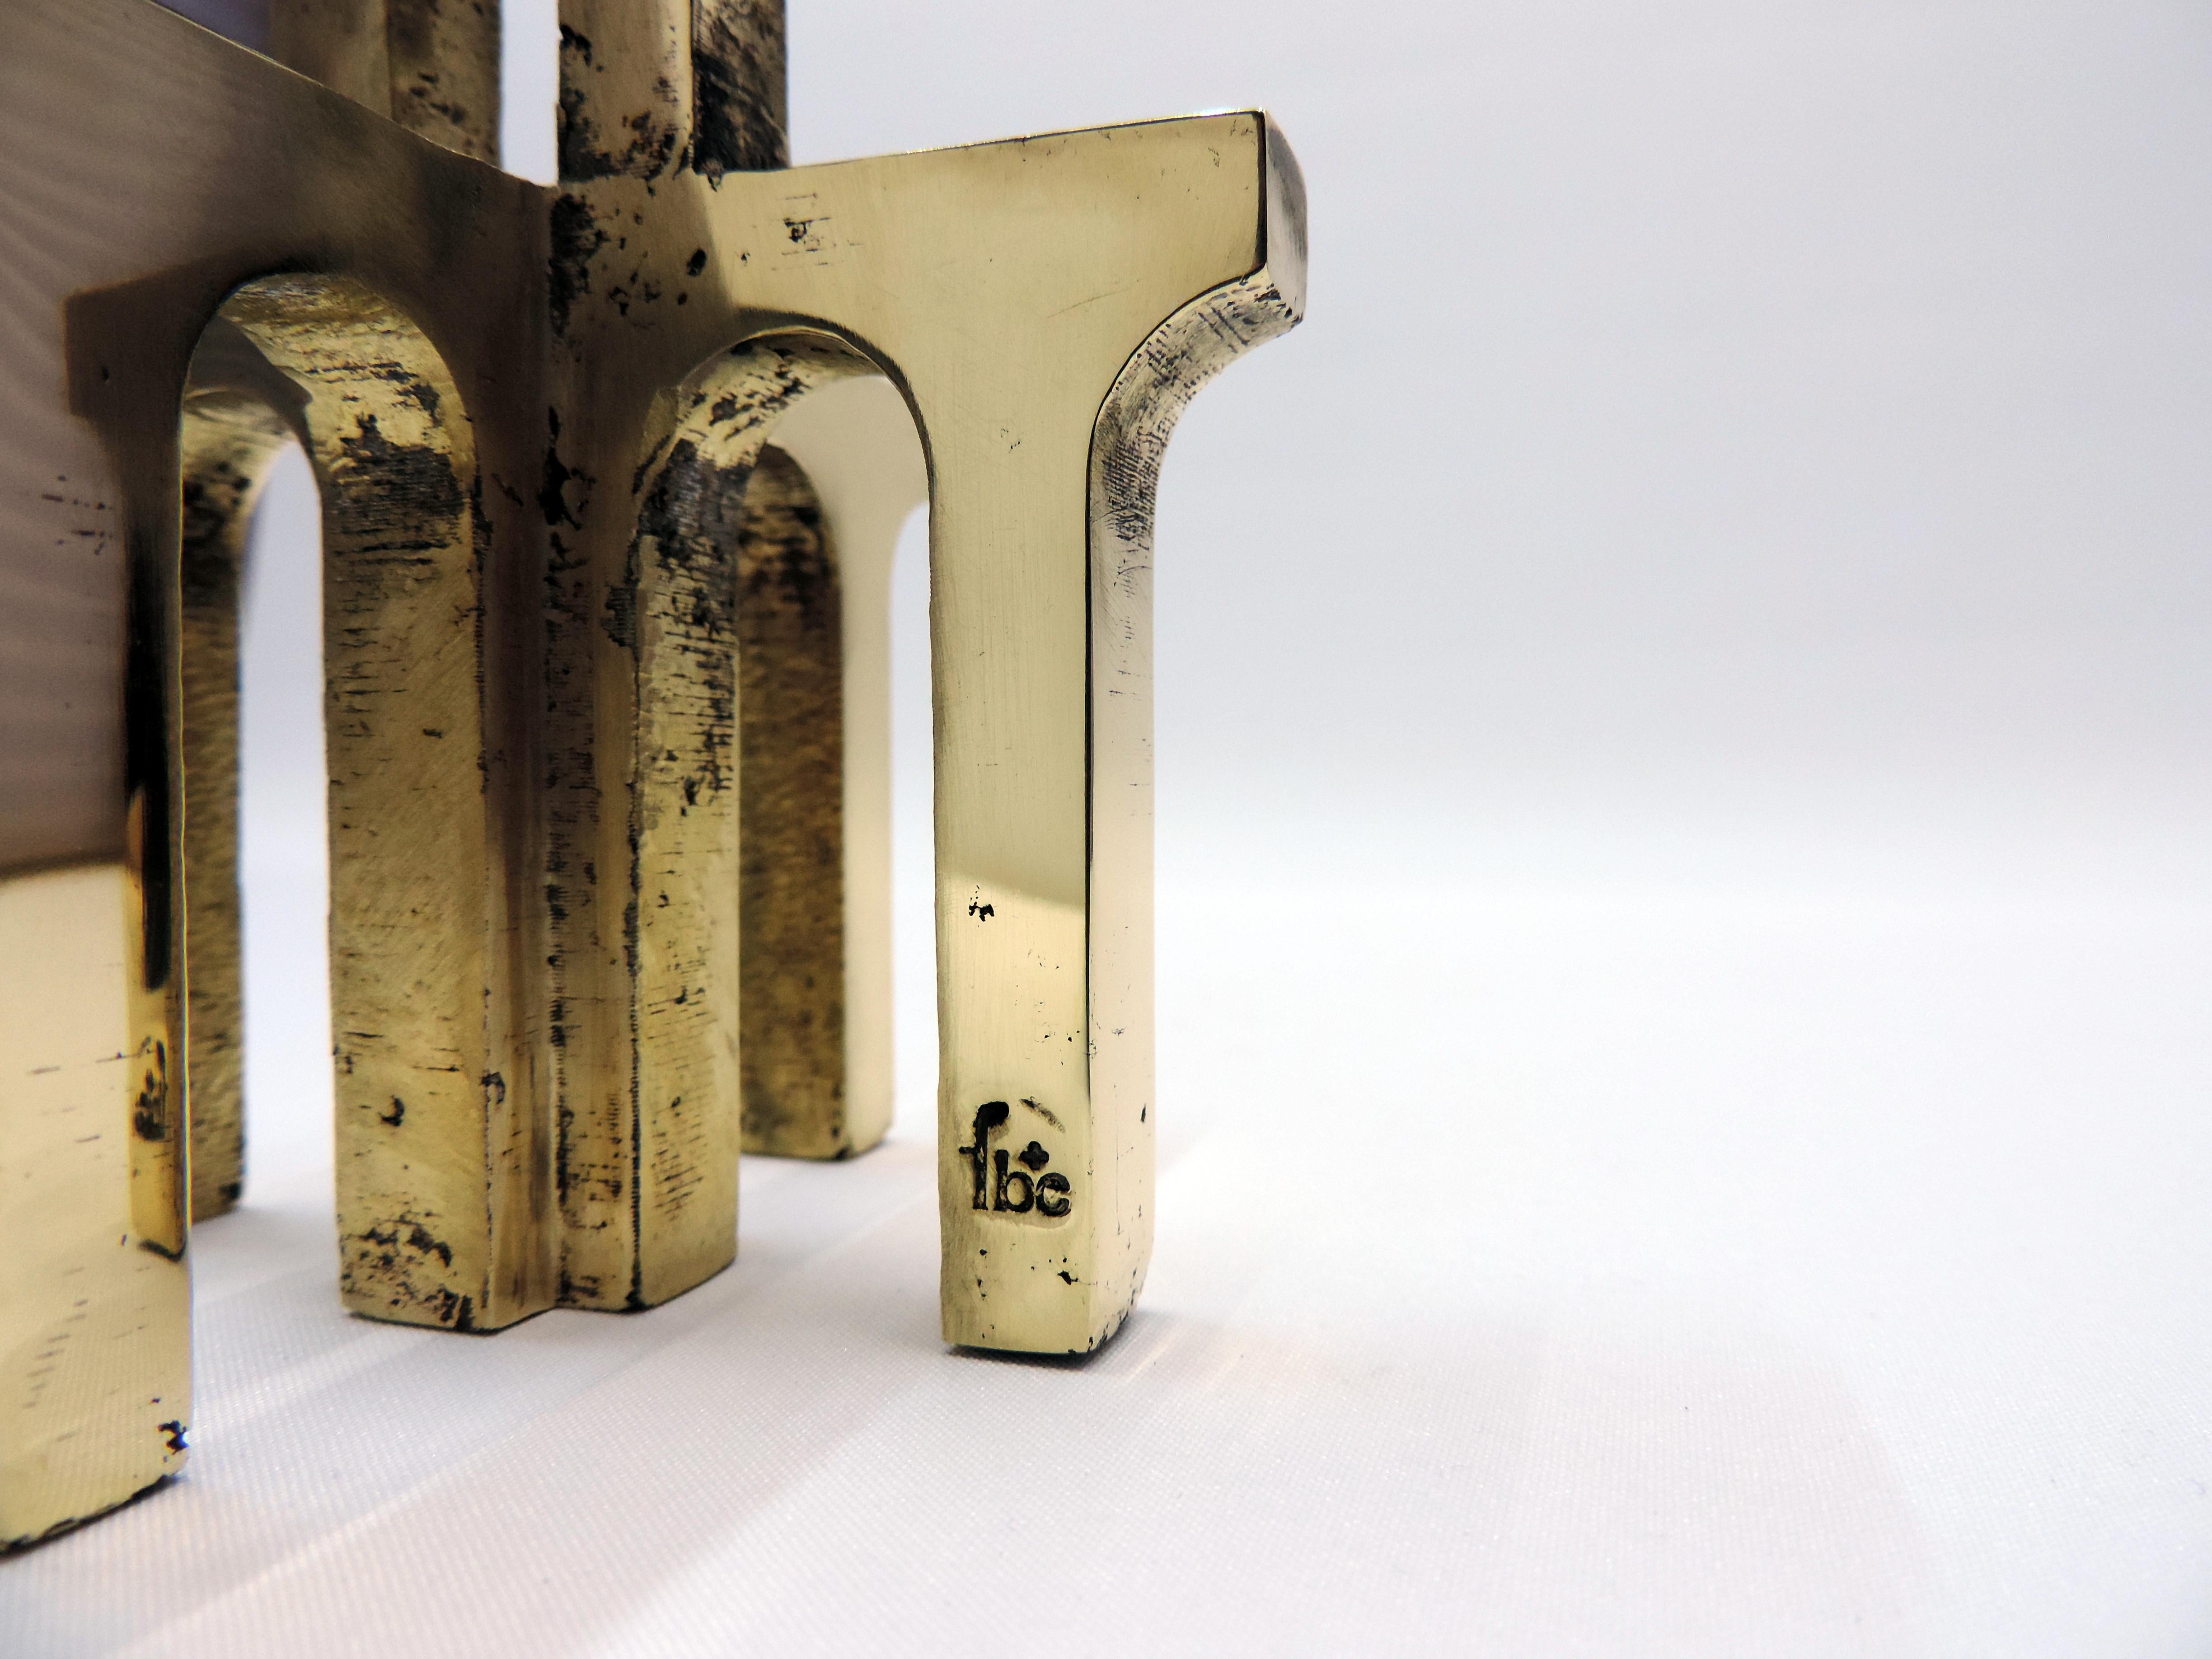 ARCHE ist ein wunderschöner, massiver Kerzenständer aus Bronze, der von Fabien Barrero-Carsenat in seinem Studio erforscht wurde. Die Bronzelegierung wurde in seiner eigenen Gießerei aus Kupfer, Zink und Zinn hergestellt, wodurch jedes Stück seine